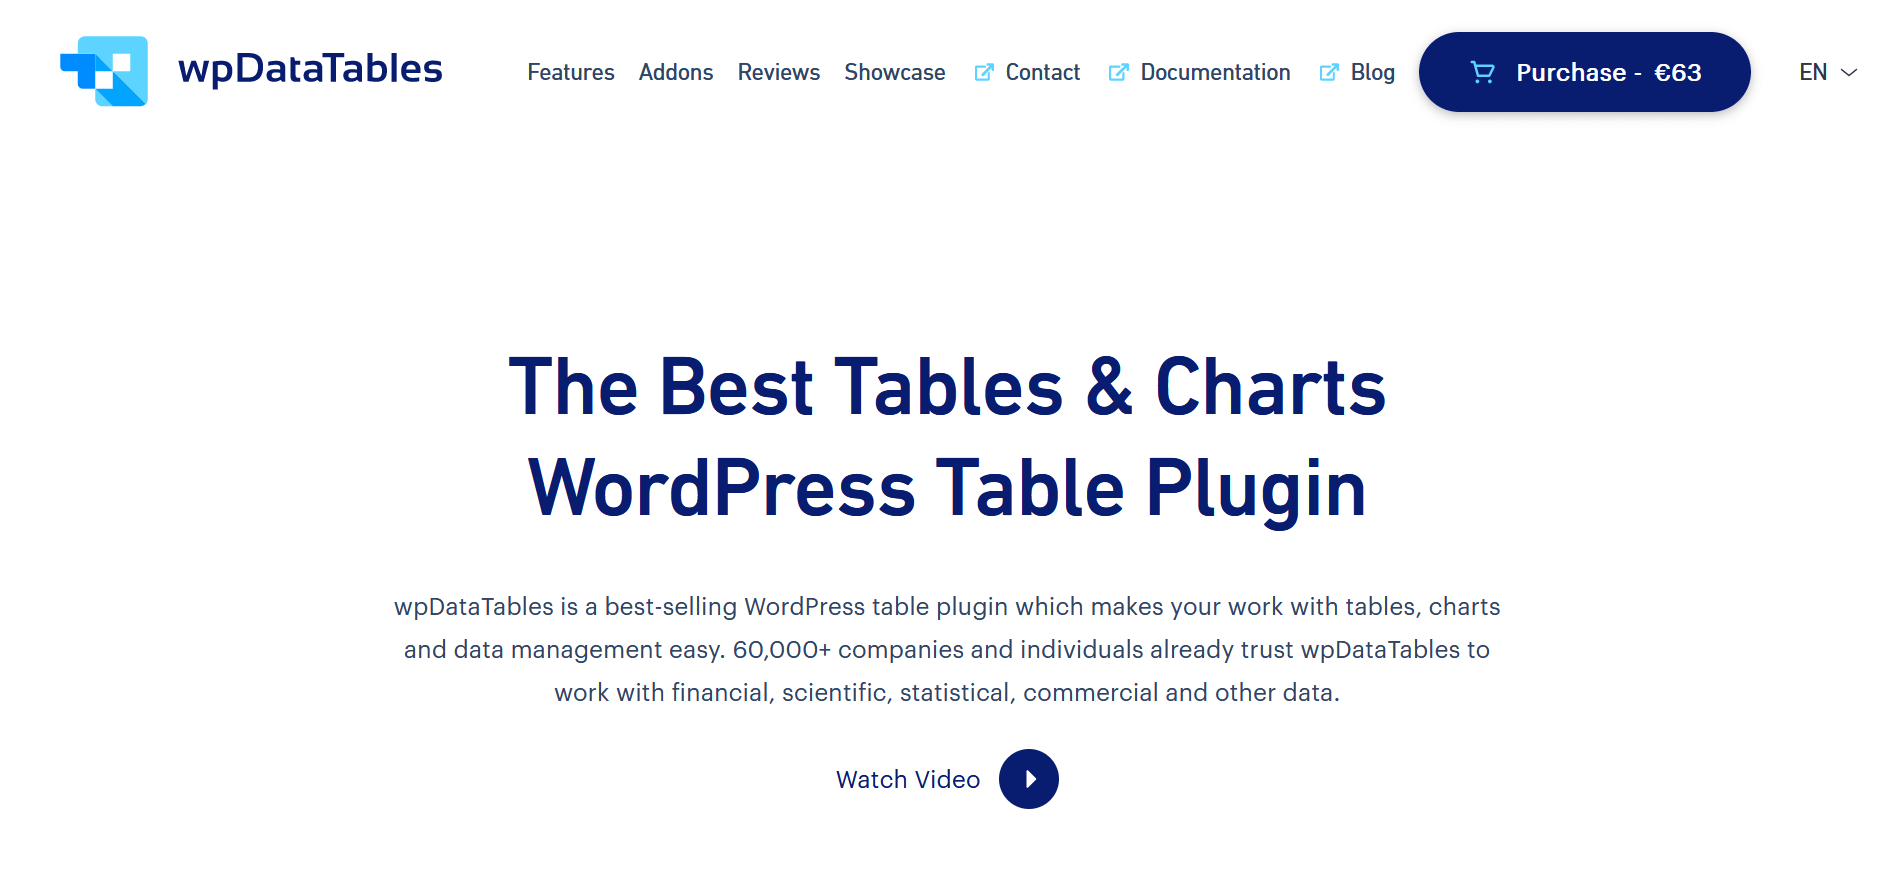 Captura de pantalla de la página web del plugin para tabla “wpDataTables”